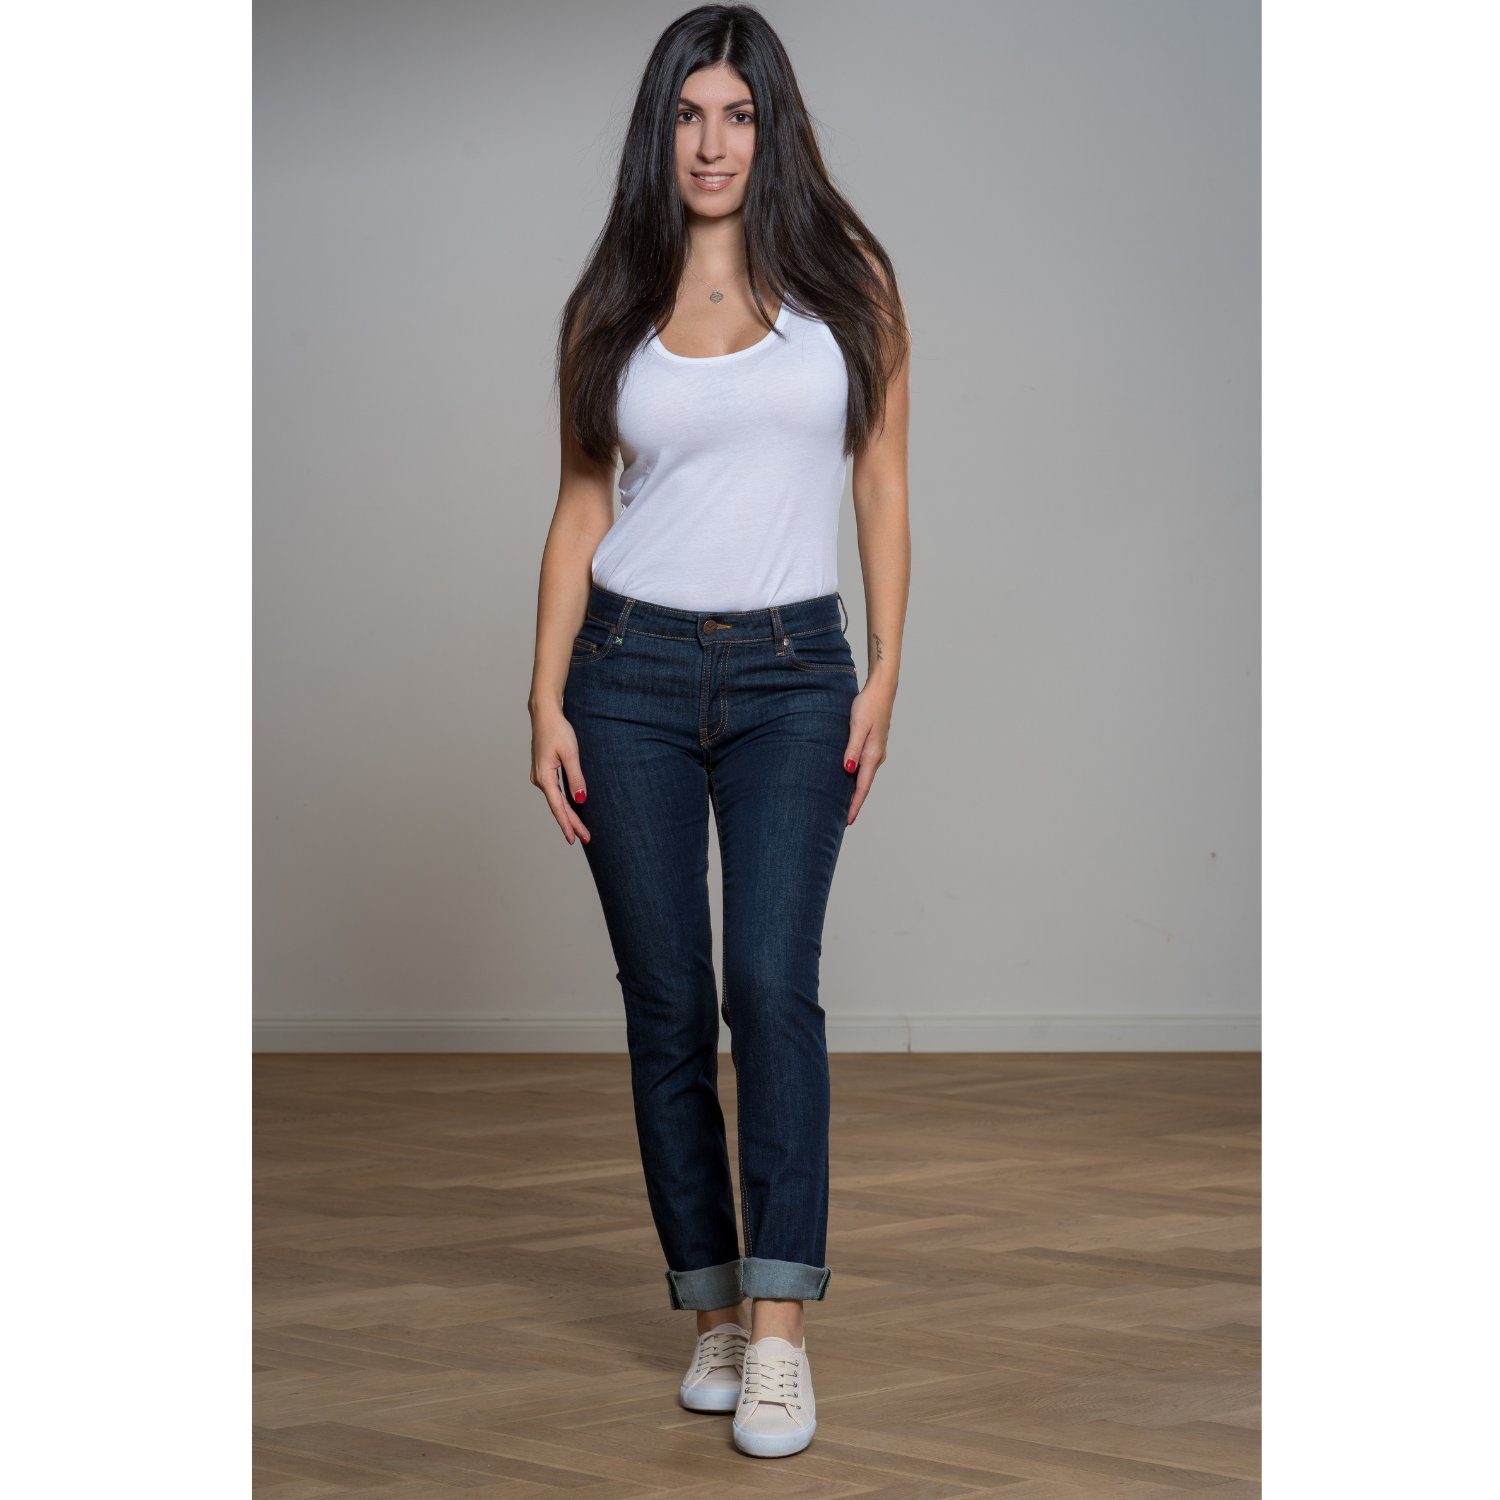 Feuervogl 5-Pocket-Jeans fv-Sve:nja, Slim Fit, Medium Waist, Damenjeans 5-Pocket-Style, Medium Waist, Slim Fit Classic Blue | Stretchjeans